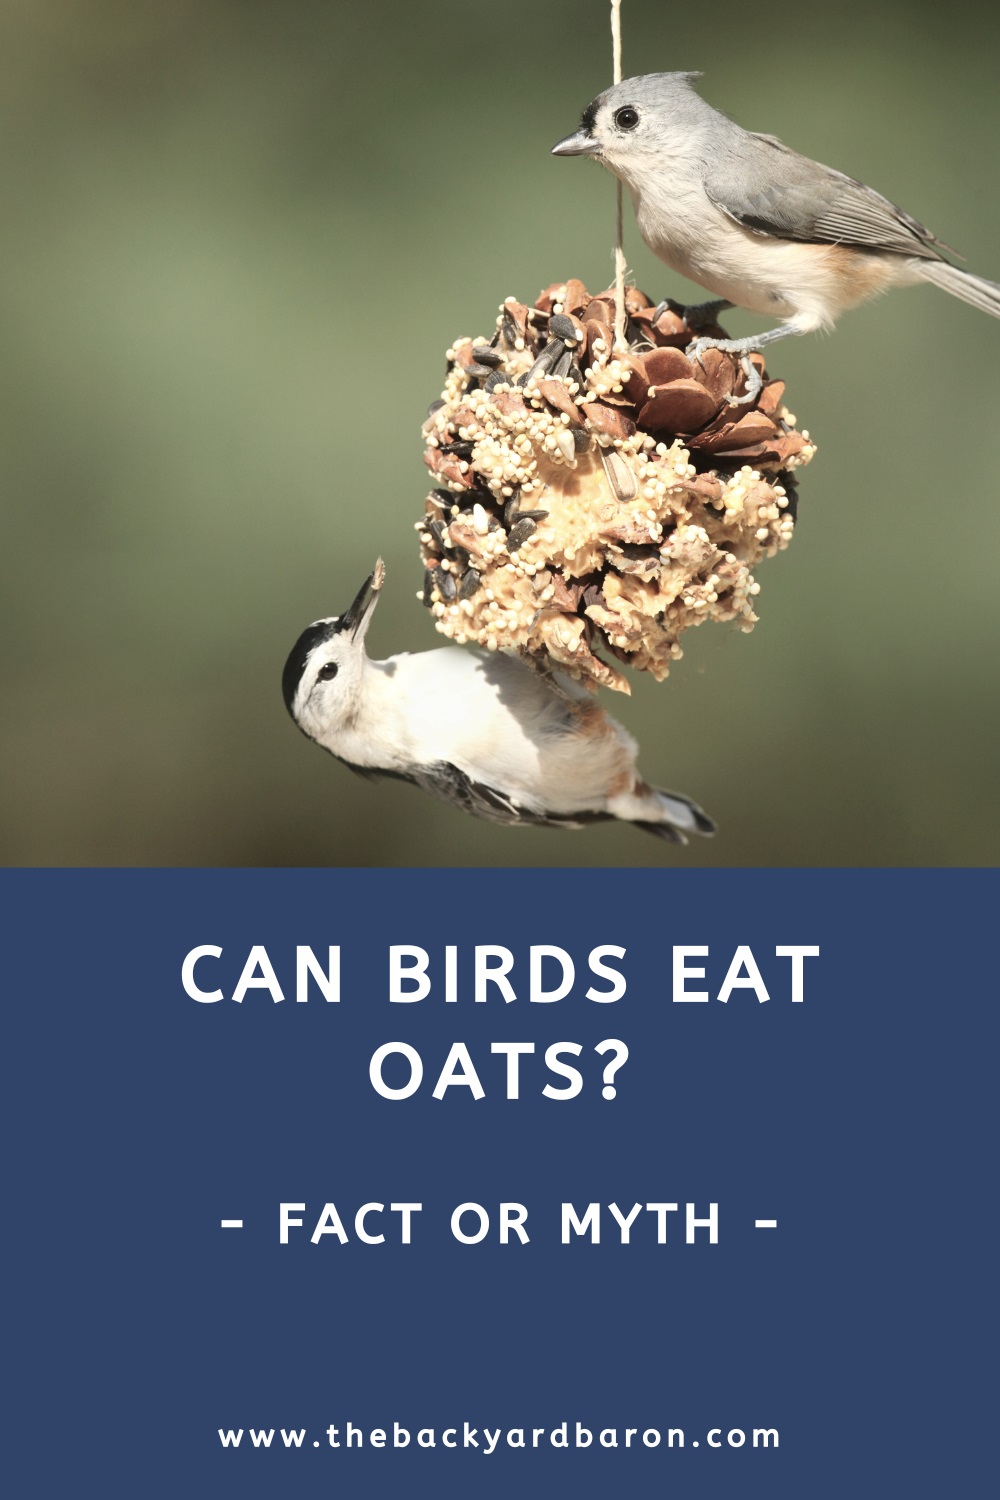 Can birds eat oats?